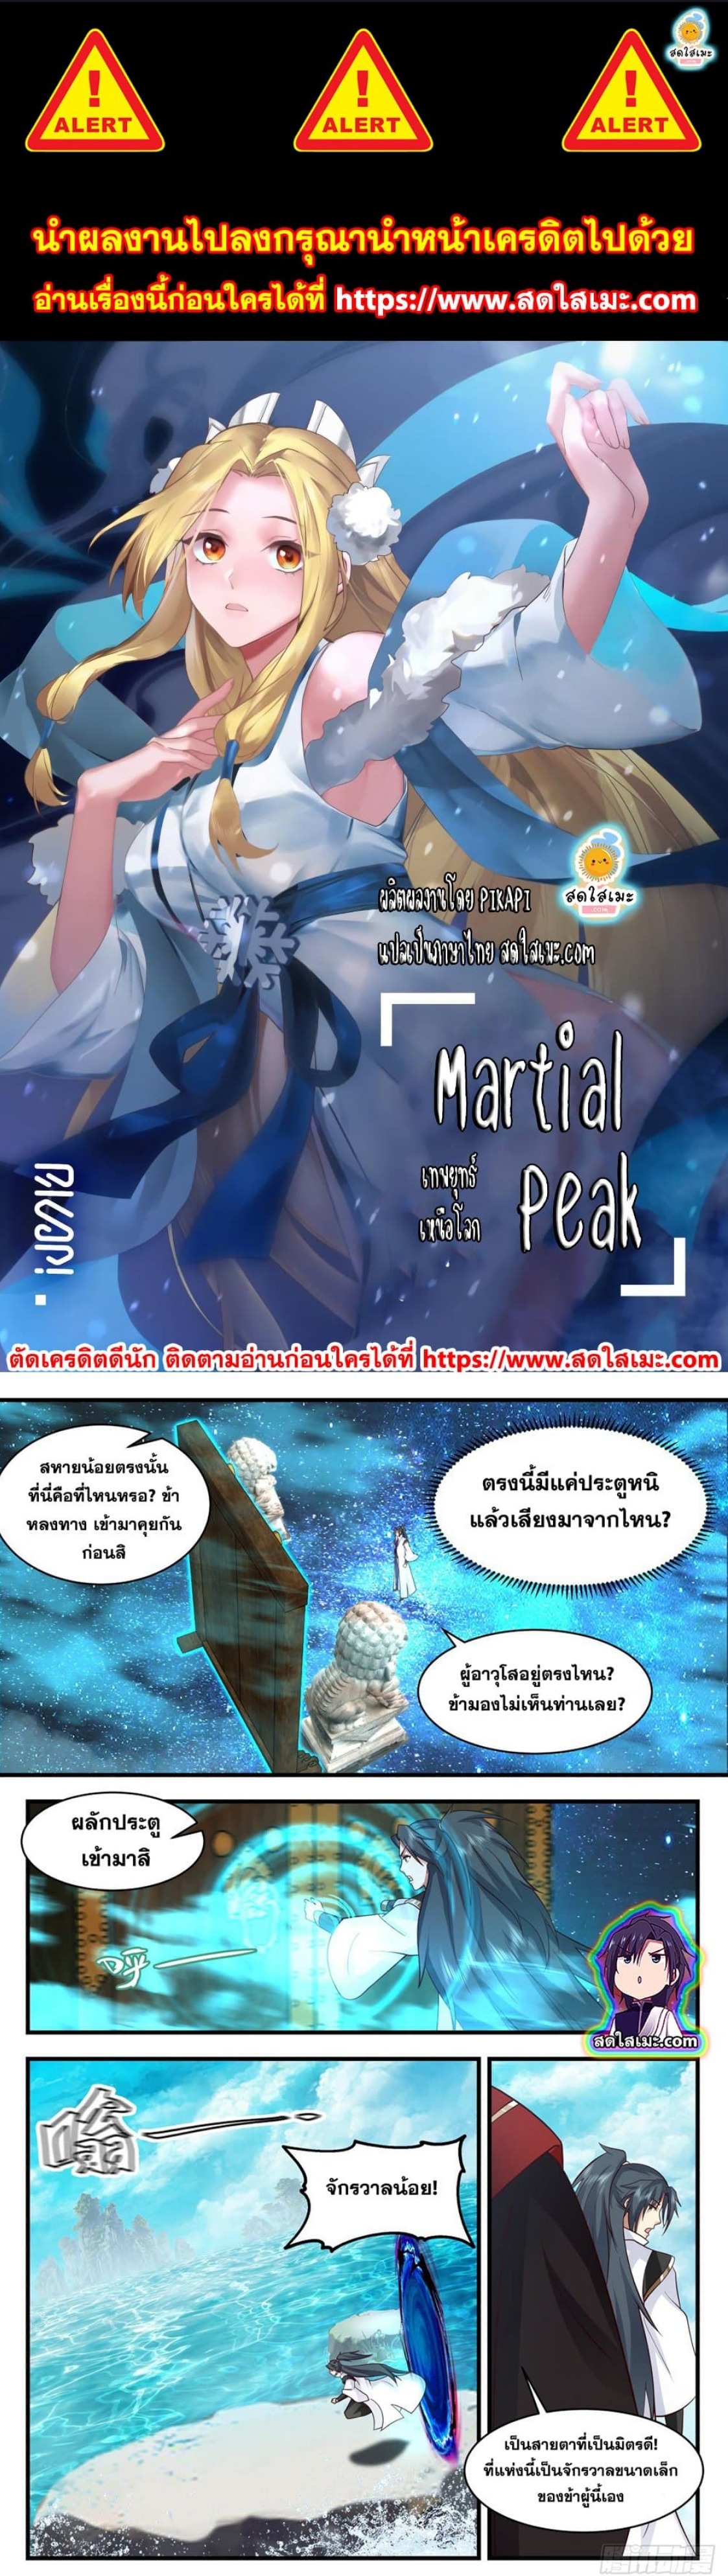 Martial Peak2578 (1)